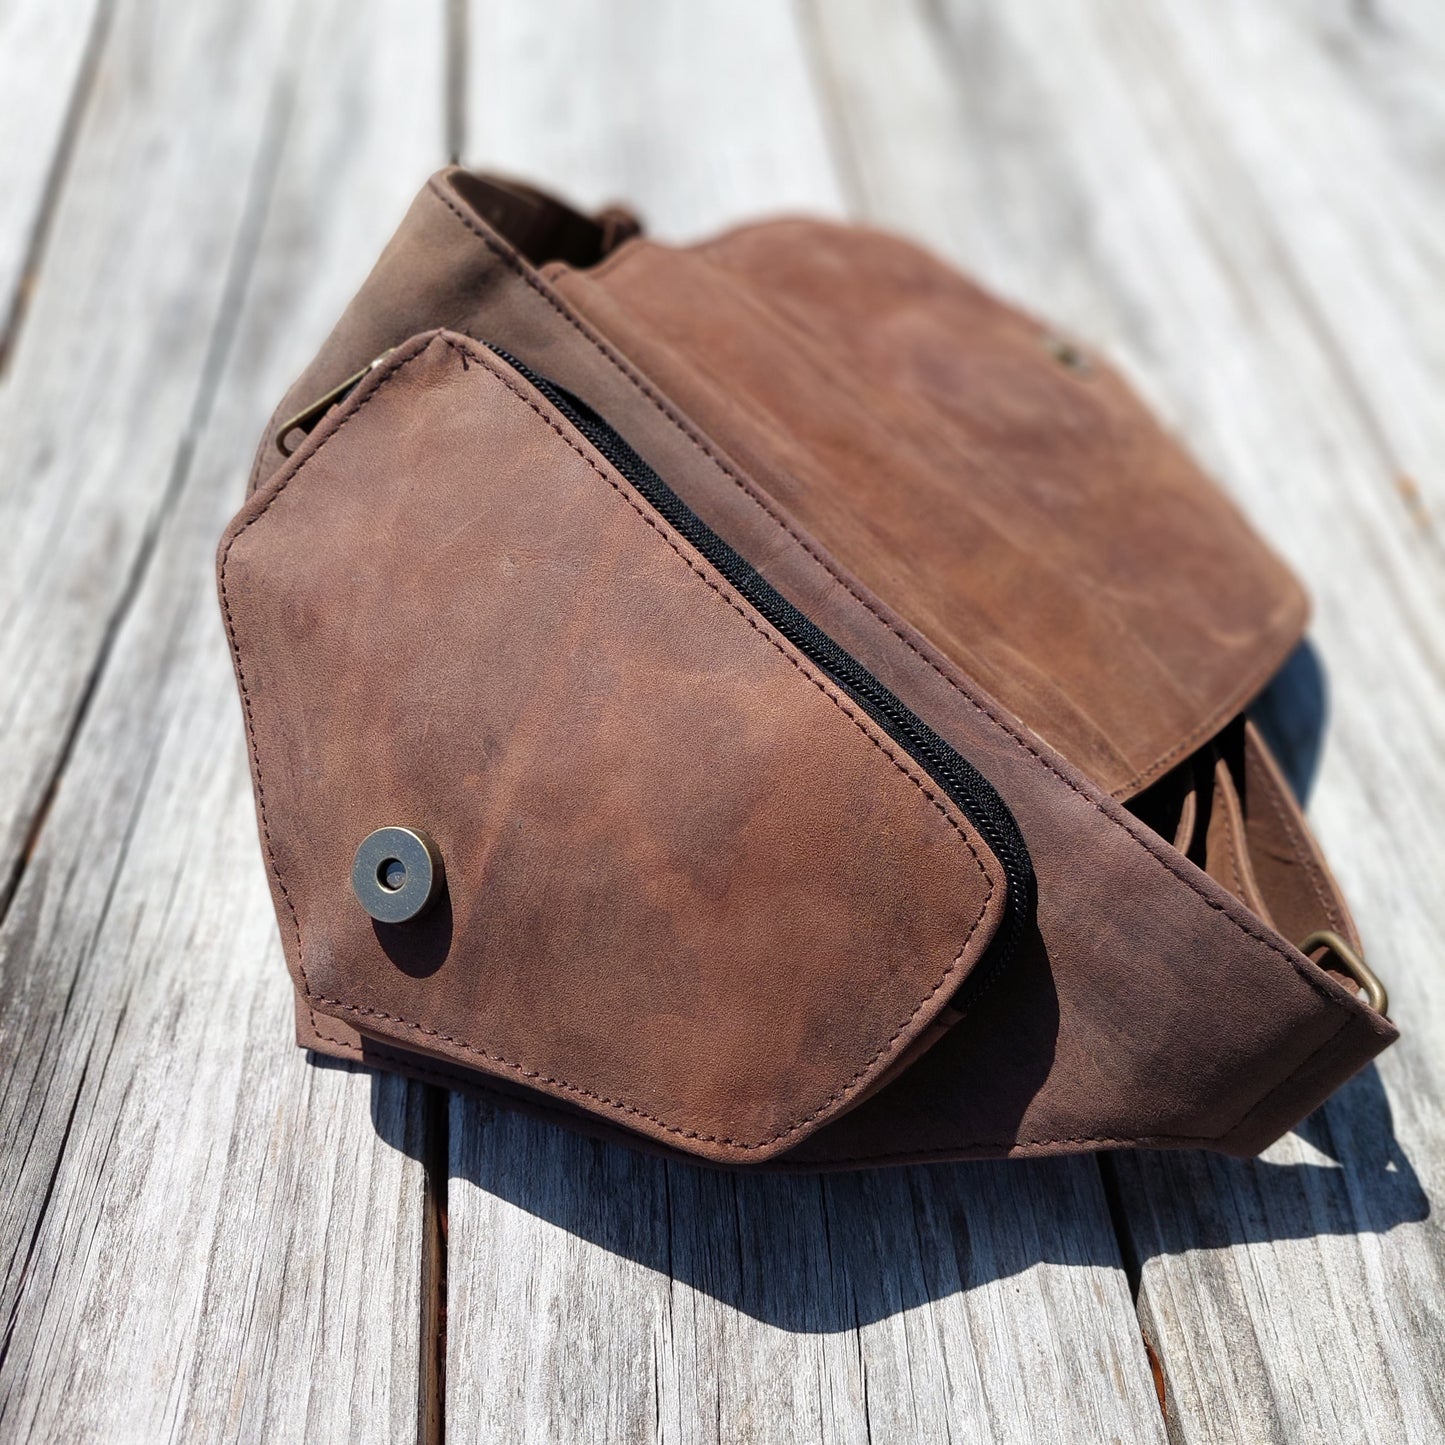 Leather belt bag | Medieval Belt Bag | Cosplay hip bag | Travel bum bag